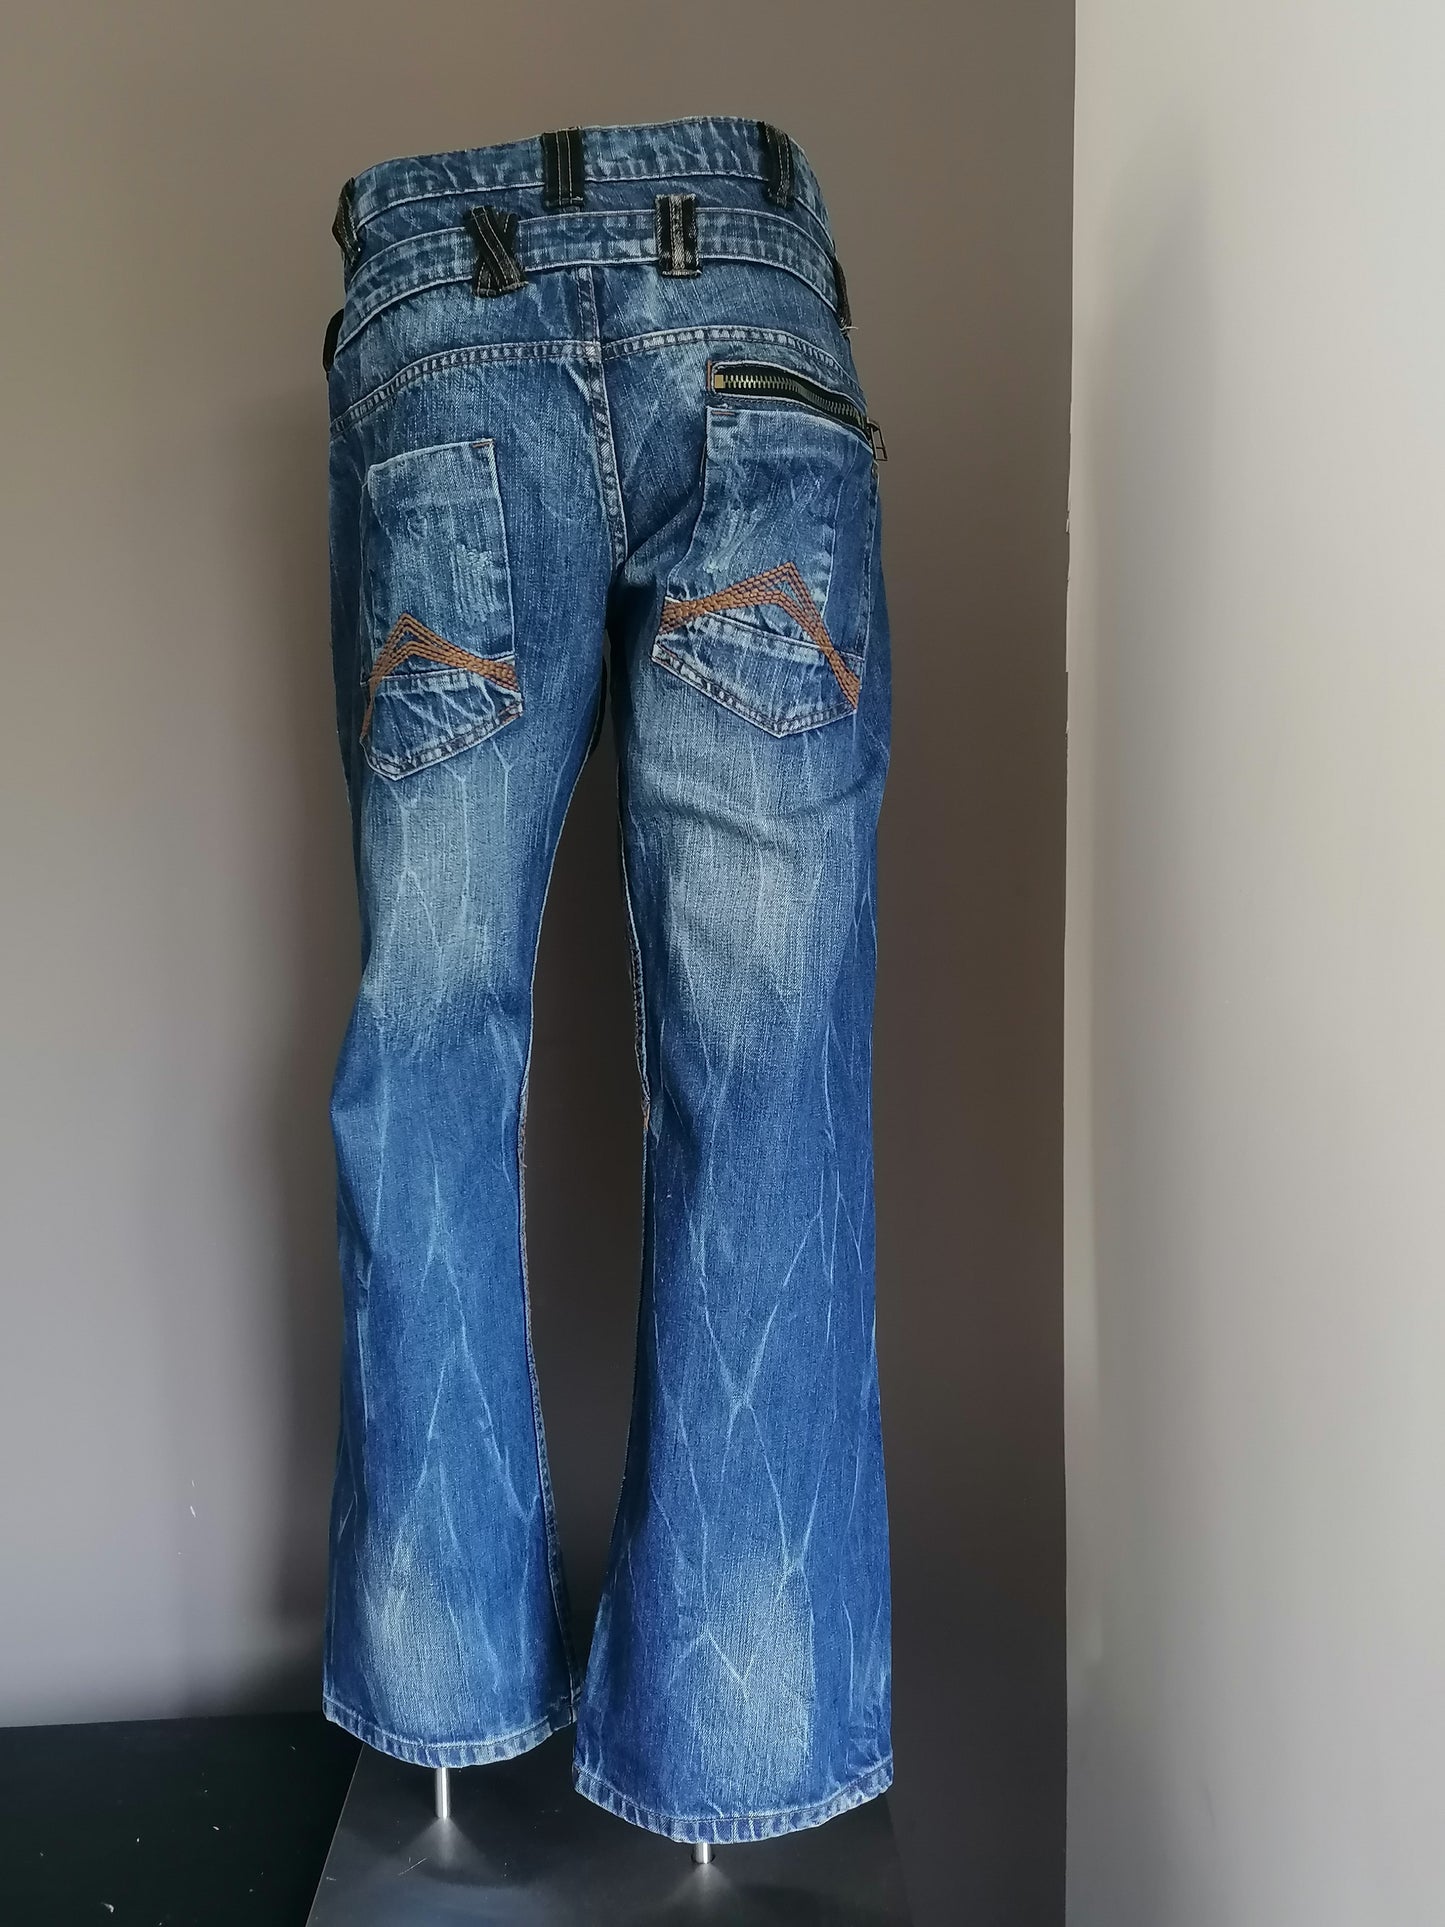 Southern Menswear jeans. Blauw gekleurd. Maat W38 - L34.